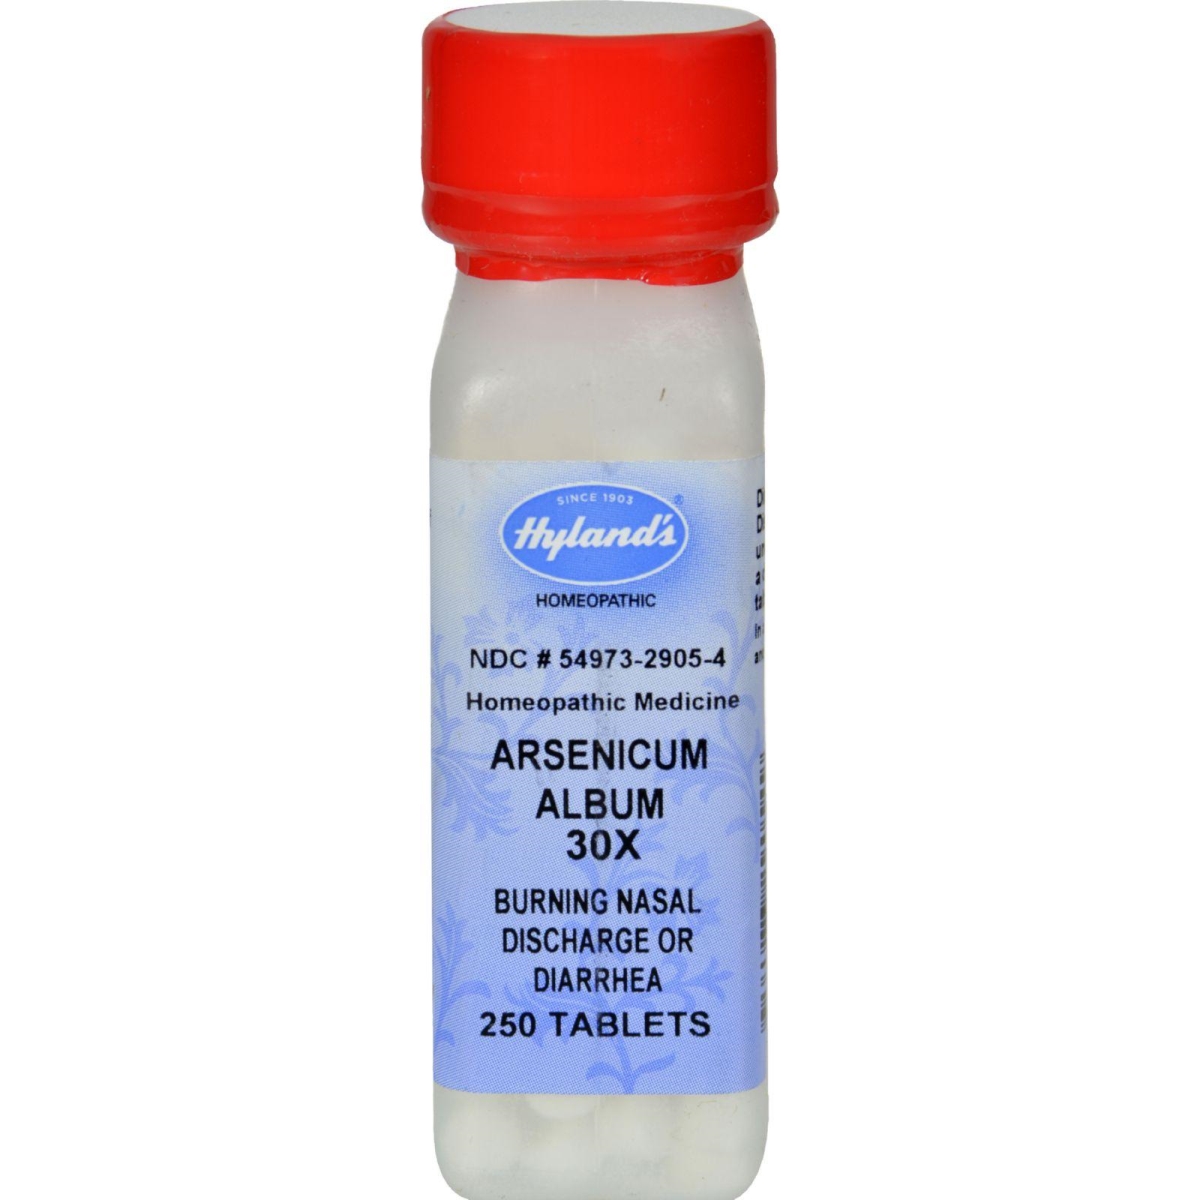 Hg0129767 Arsenicum Album 30x, 250 Tablets